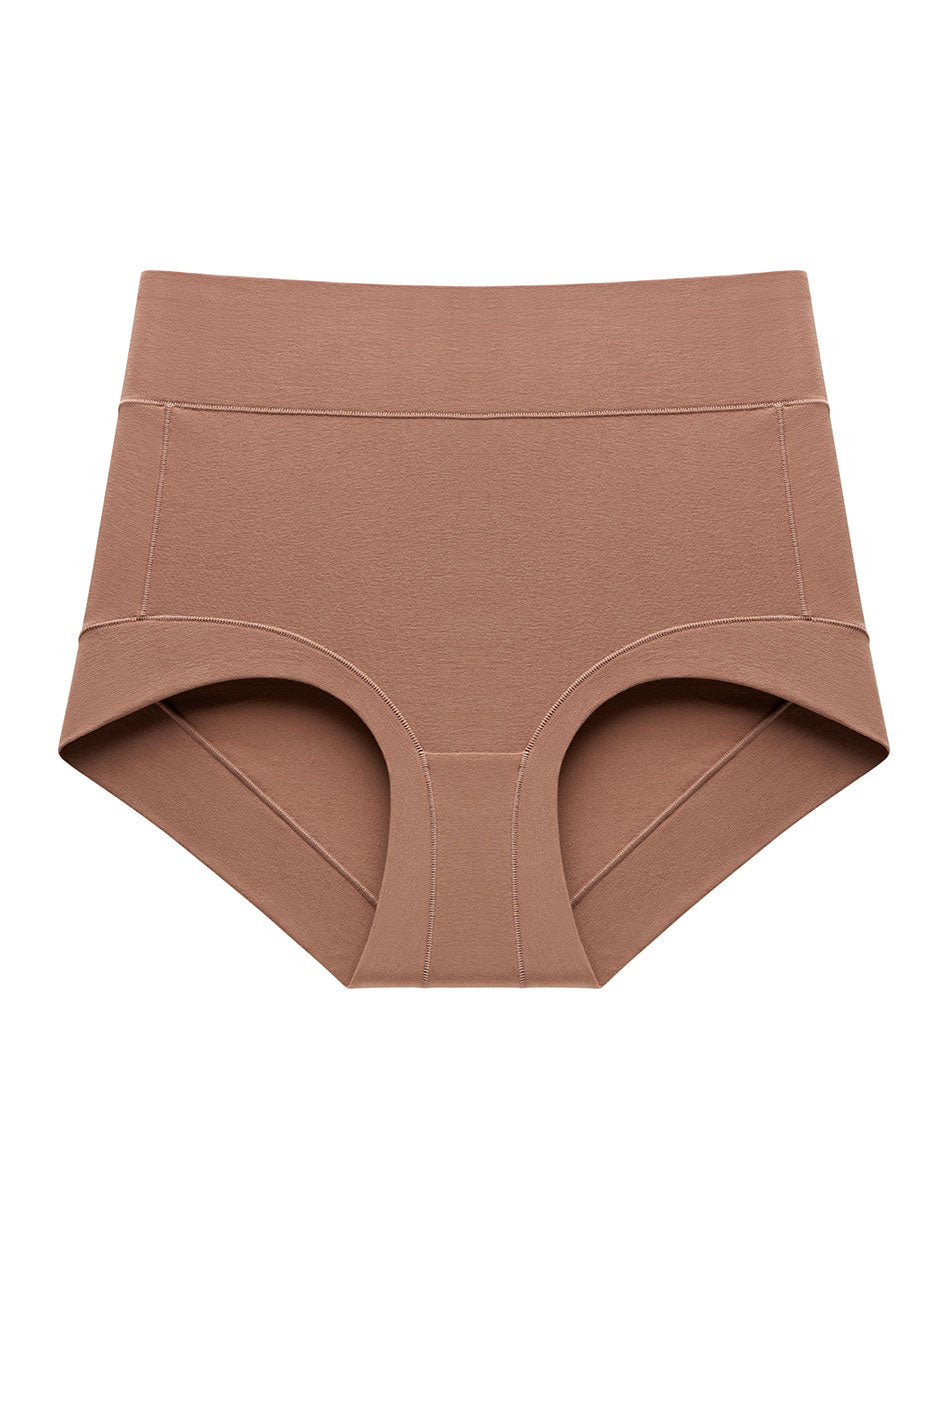 Pima Cotton Underwear: Shop Now in US & Canada - Understance